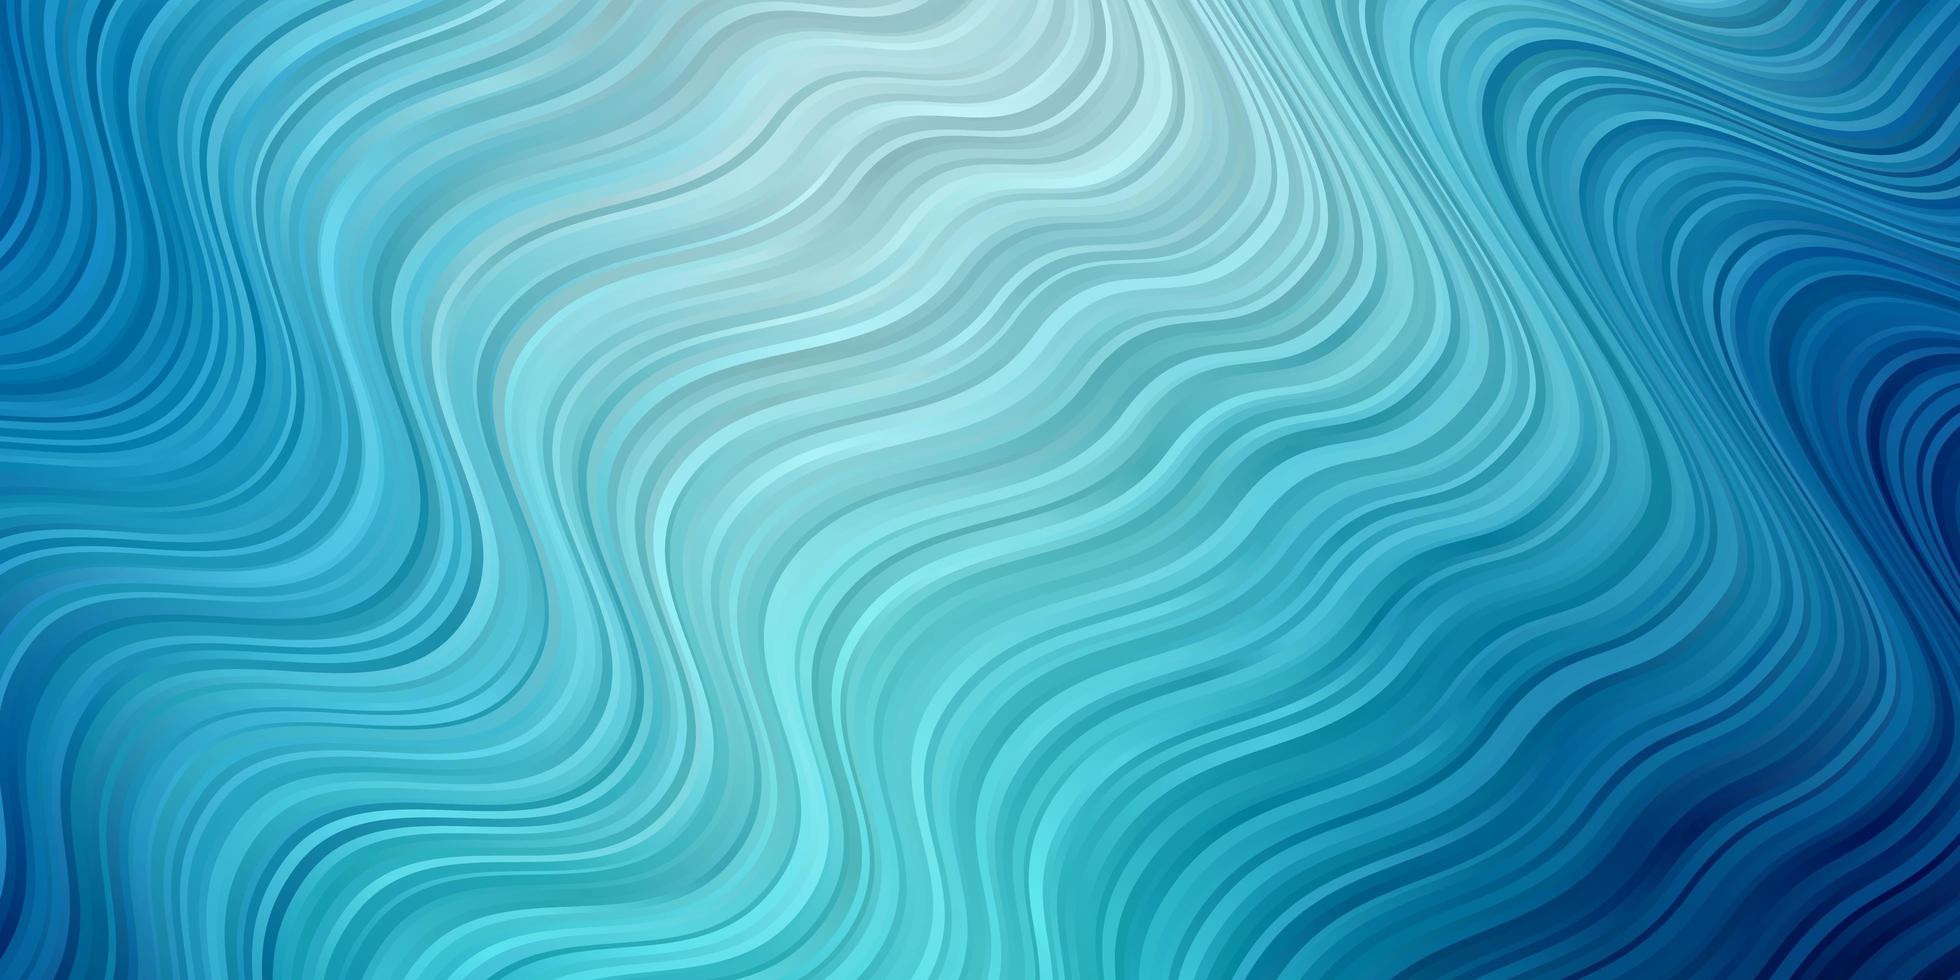 hellblauer Vektorhintergrund mit Kurven. abstrakte Darstellung mit Bandy-Farbverlaufslinien. Design für Ihre Unternehmenswerbung. vektor